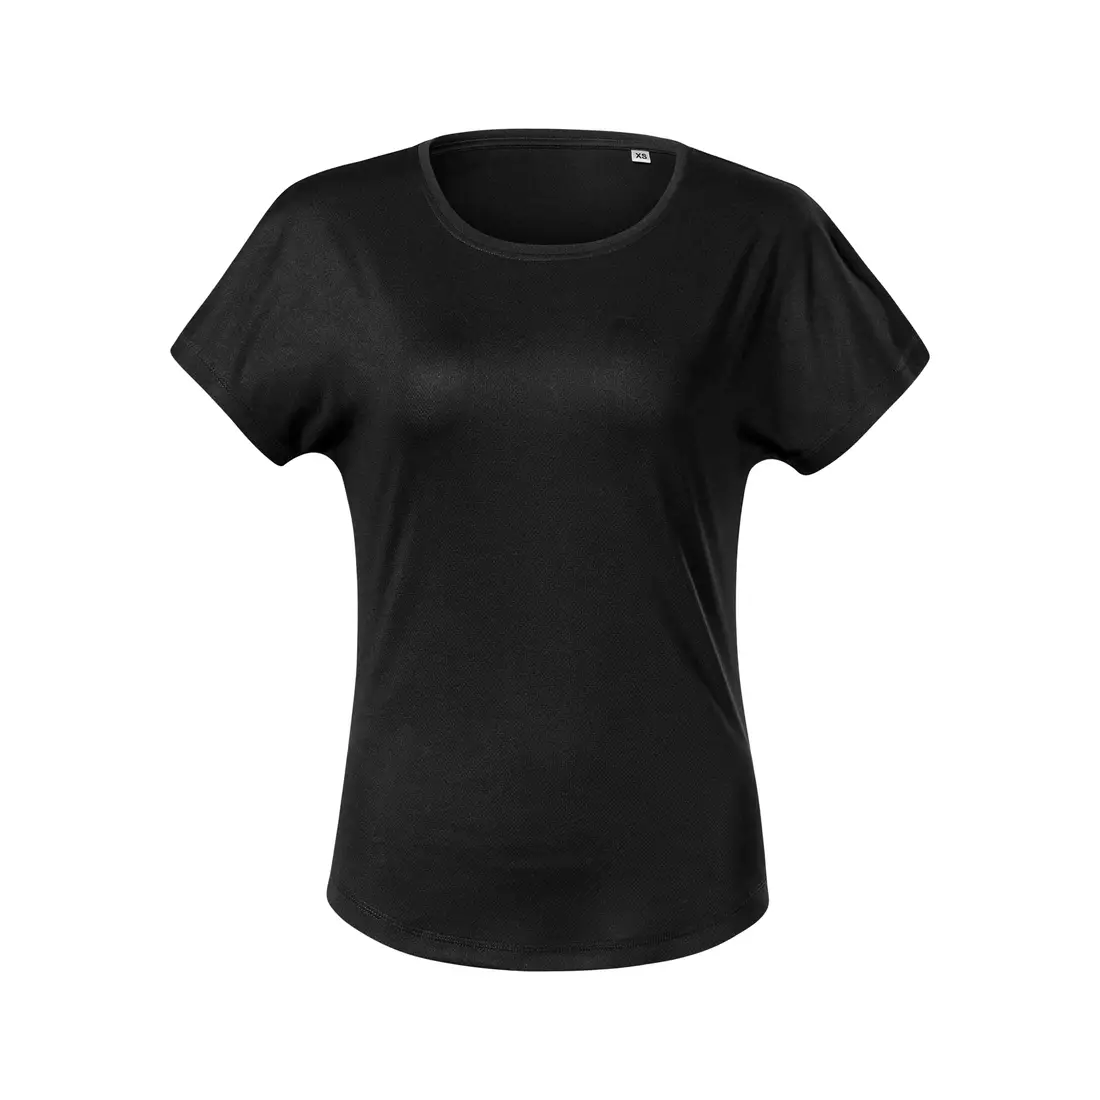 MALFINI CHANCE GRS Női sport póló, rövid ujjú, újrahasznosított mikropoliészter, fekete 8110112